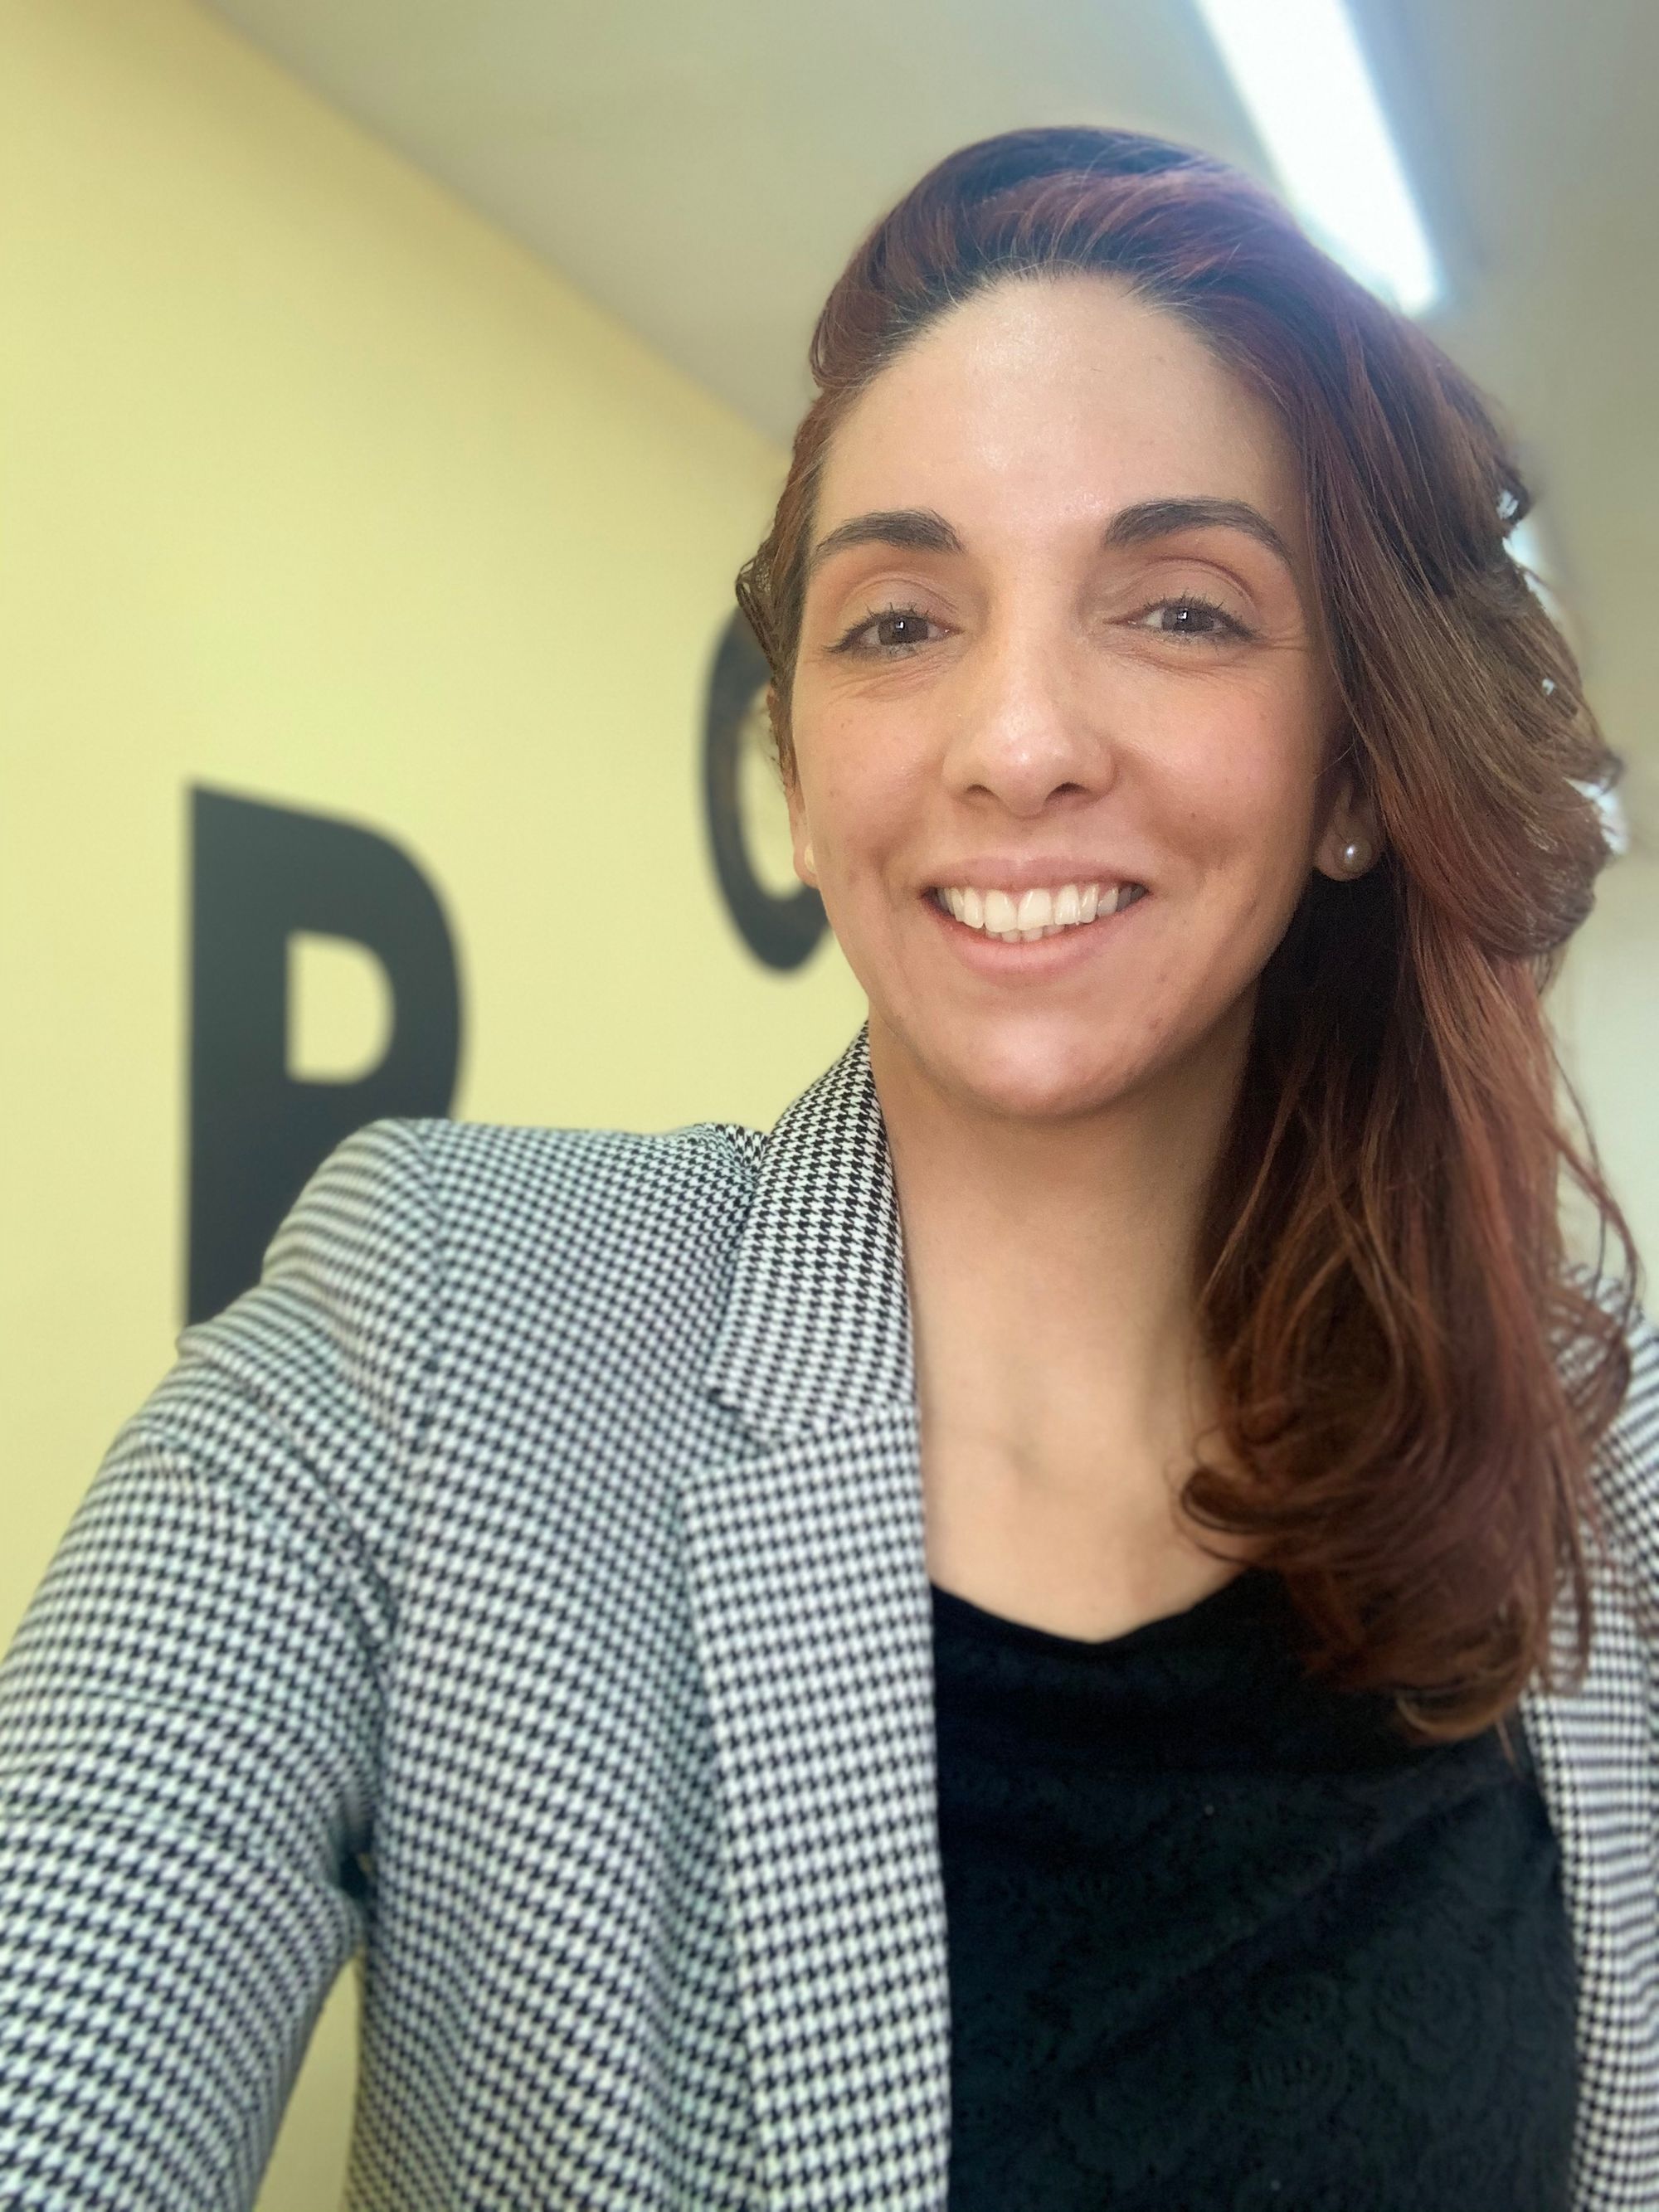 Una soñadora del coworking encontró su propósito en Colombia